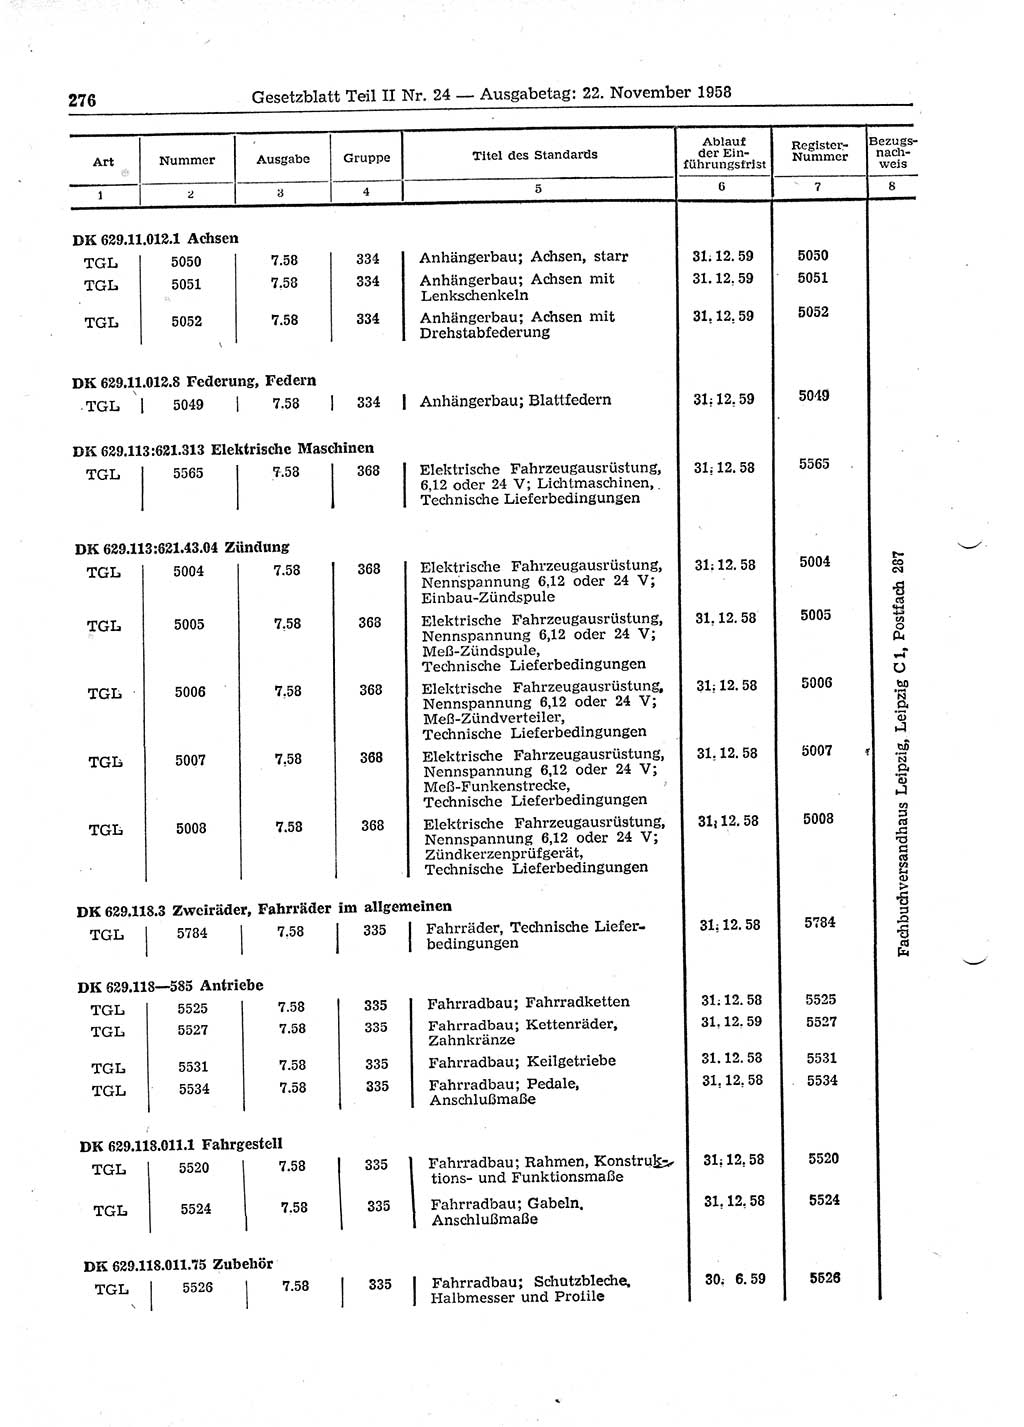 Gesetzblatt (GBl.) der Deutschen Demokratischen Republik (DDR) Teil ⅠⅠ 1958, Seite 276 (GBl. DDR ⅠⅠ 1958, S. 276)